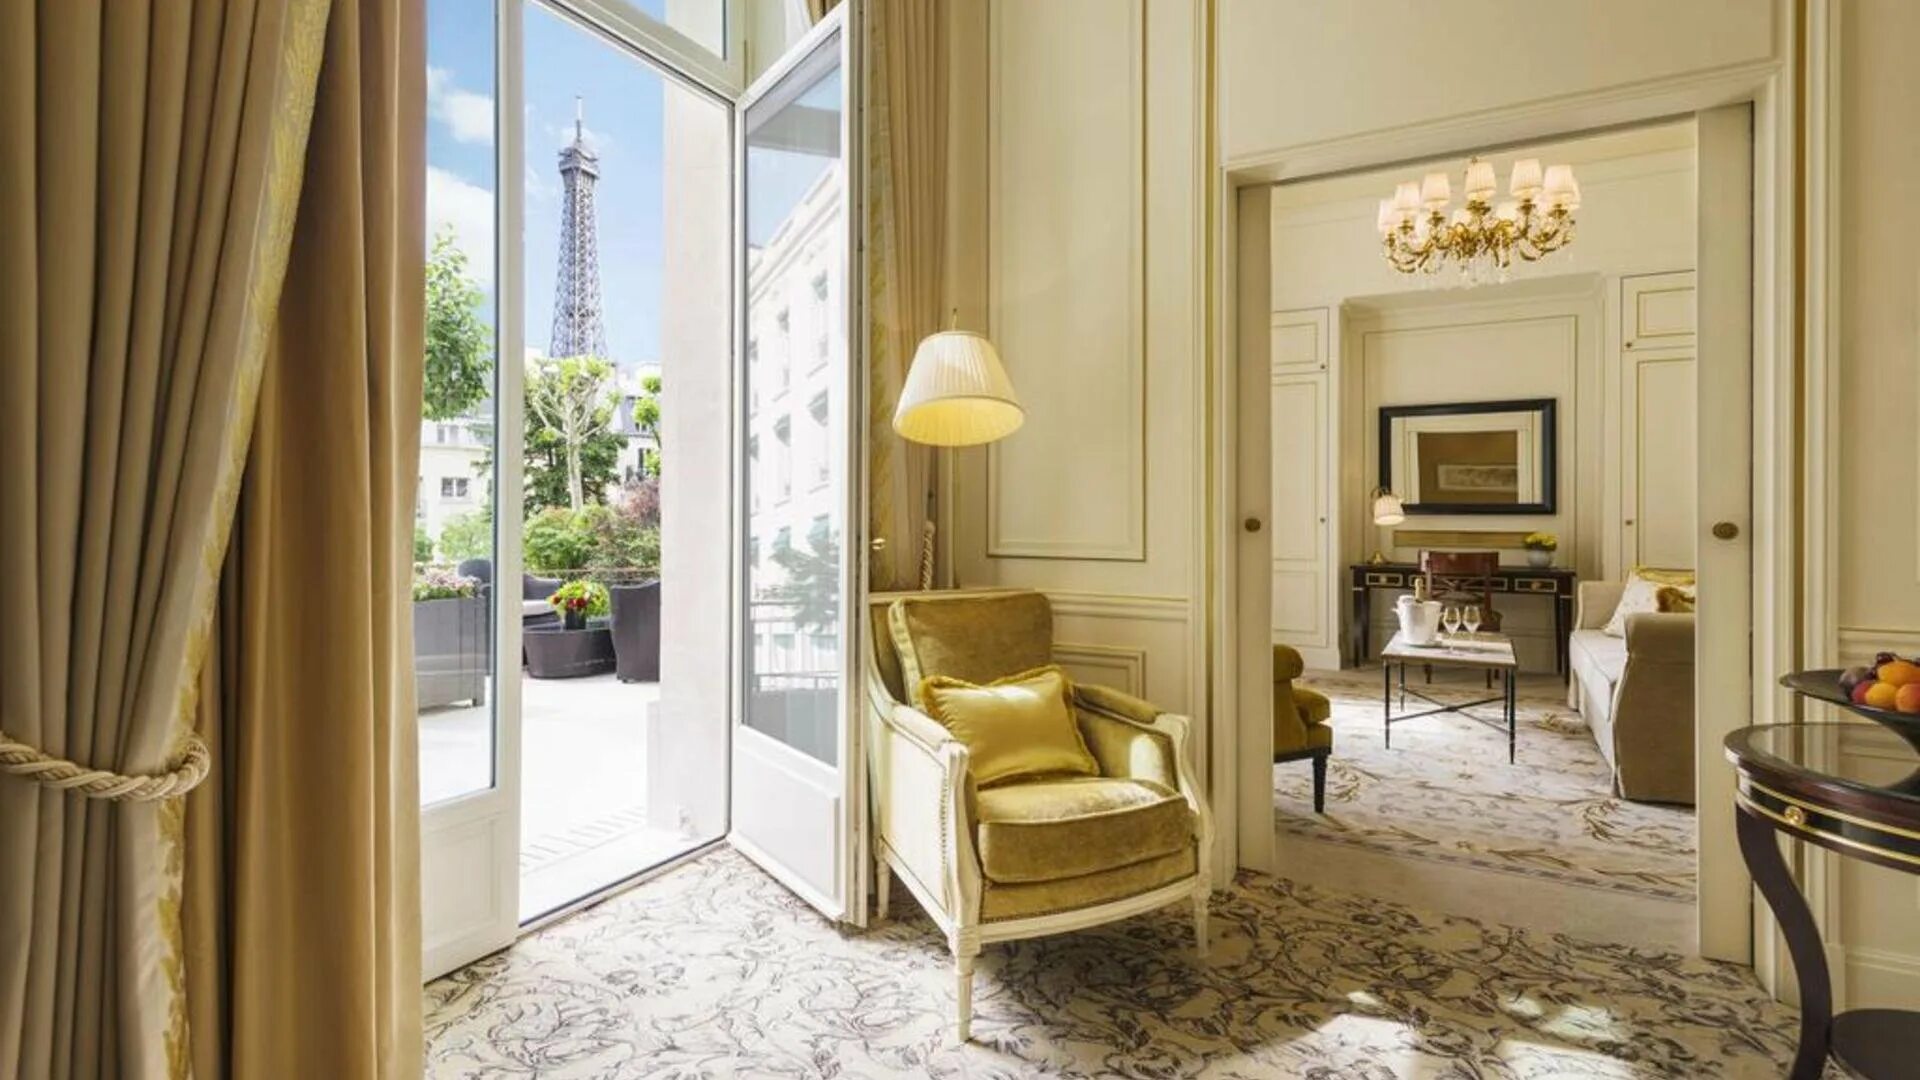 Отель Шангри ла Париж. Отель в Париже Shangri la. Shangri la Hotel Paris номера. Отель Shangri-la Paris (Париж, Франция).